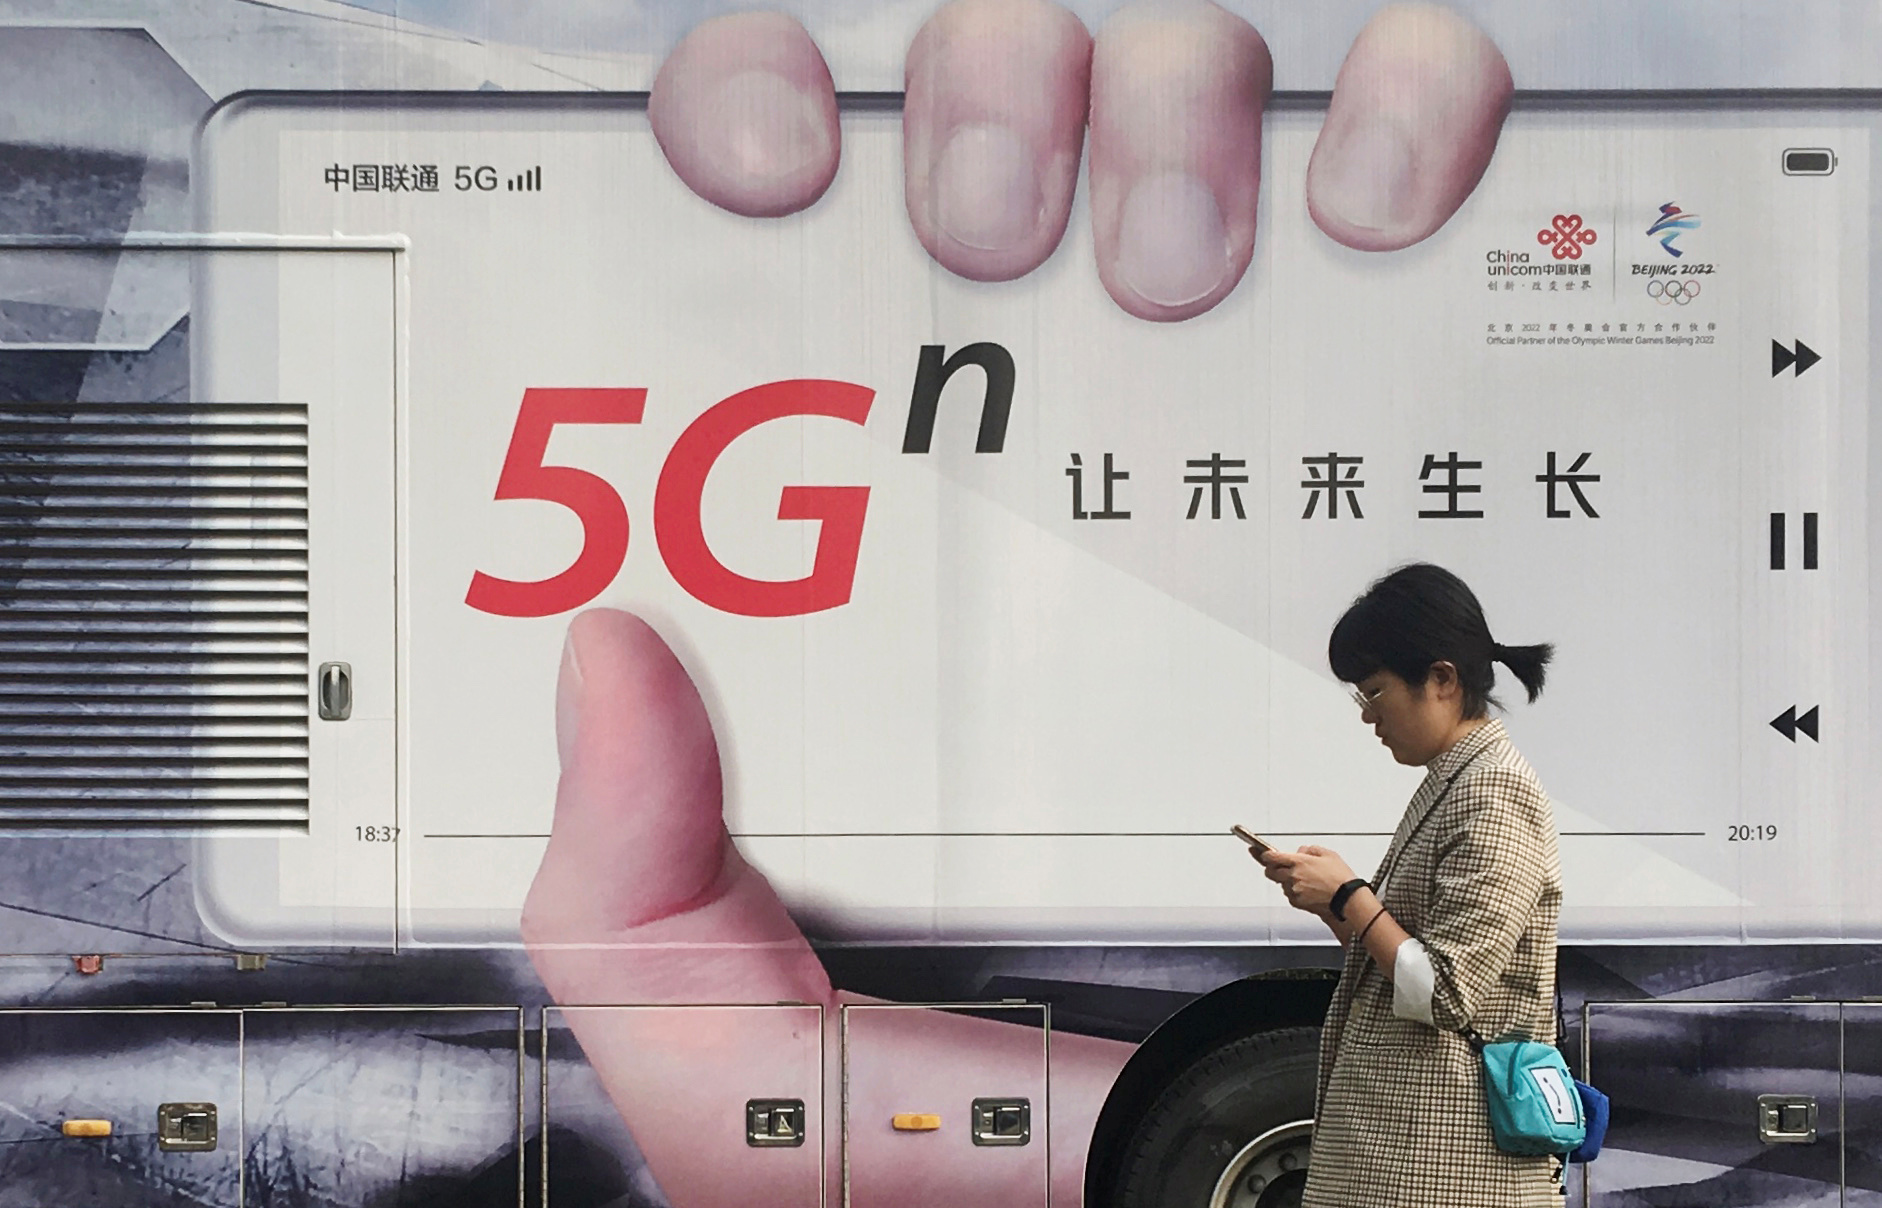 EEUU, China, Japón y Corea del Sur dominarán la red 5G, según estudio